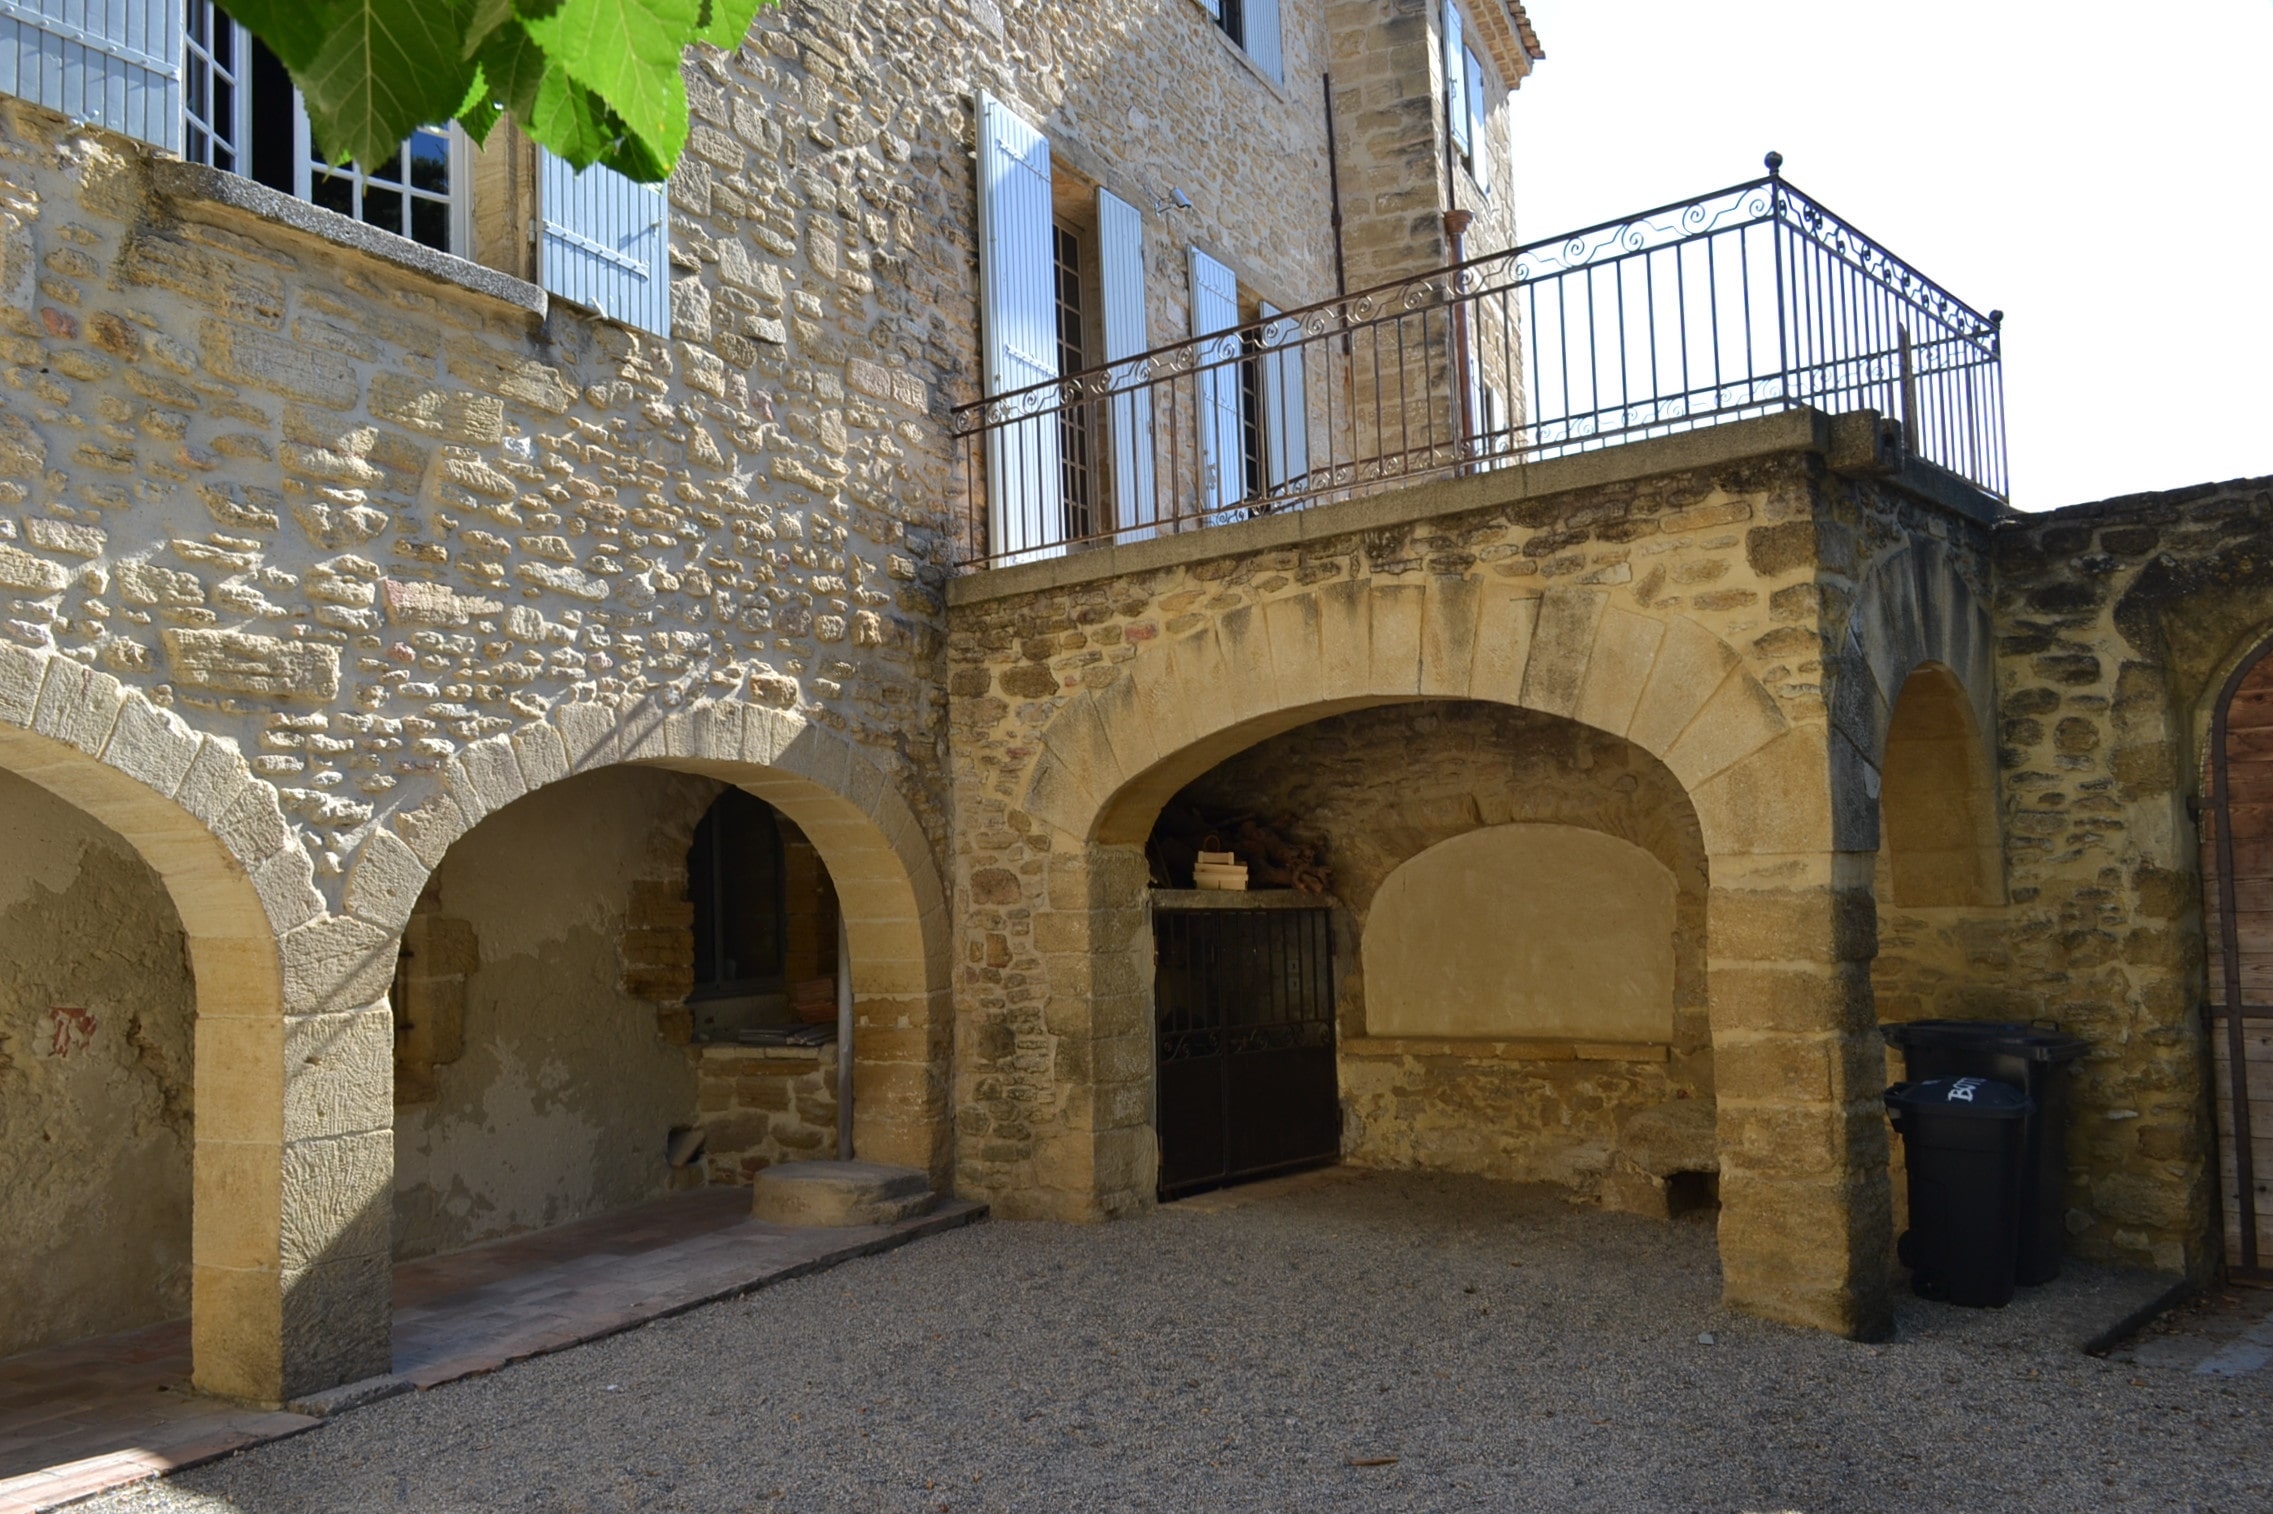 Maison provençale avec arche en pierre de taille.